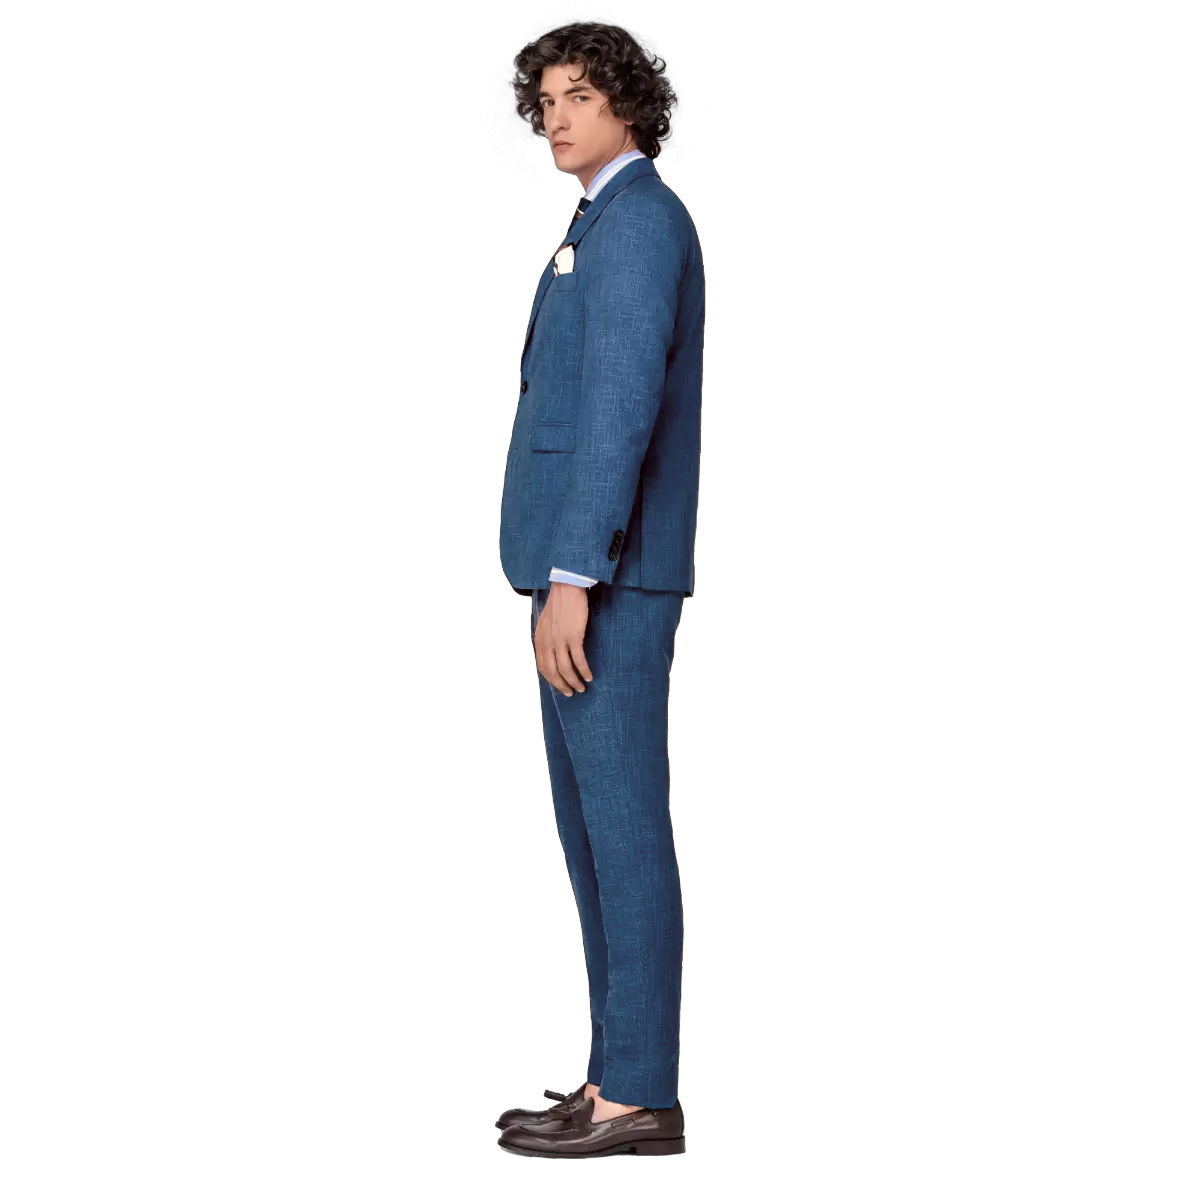 Ανδρικό Κοστούμι Μπλε Τυρκουάζ Tailor Italian Wear